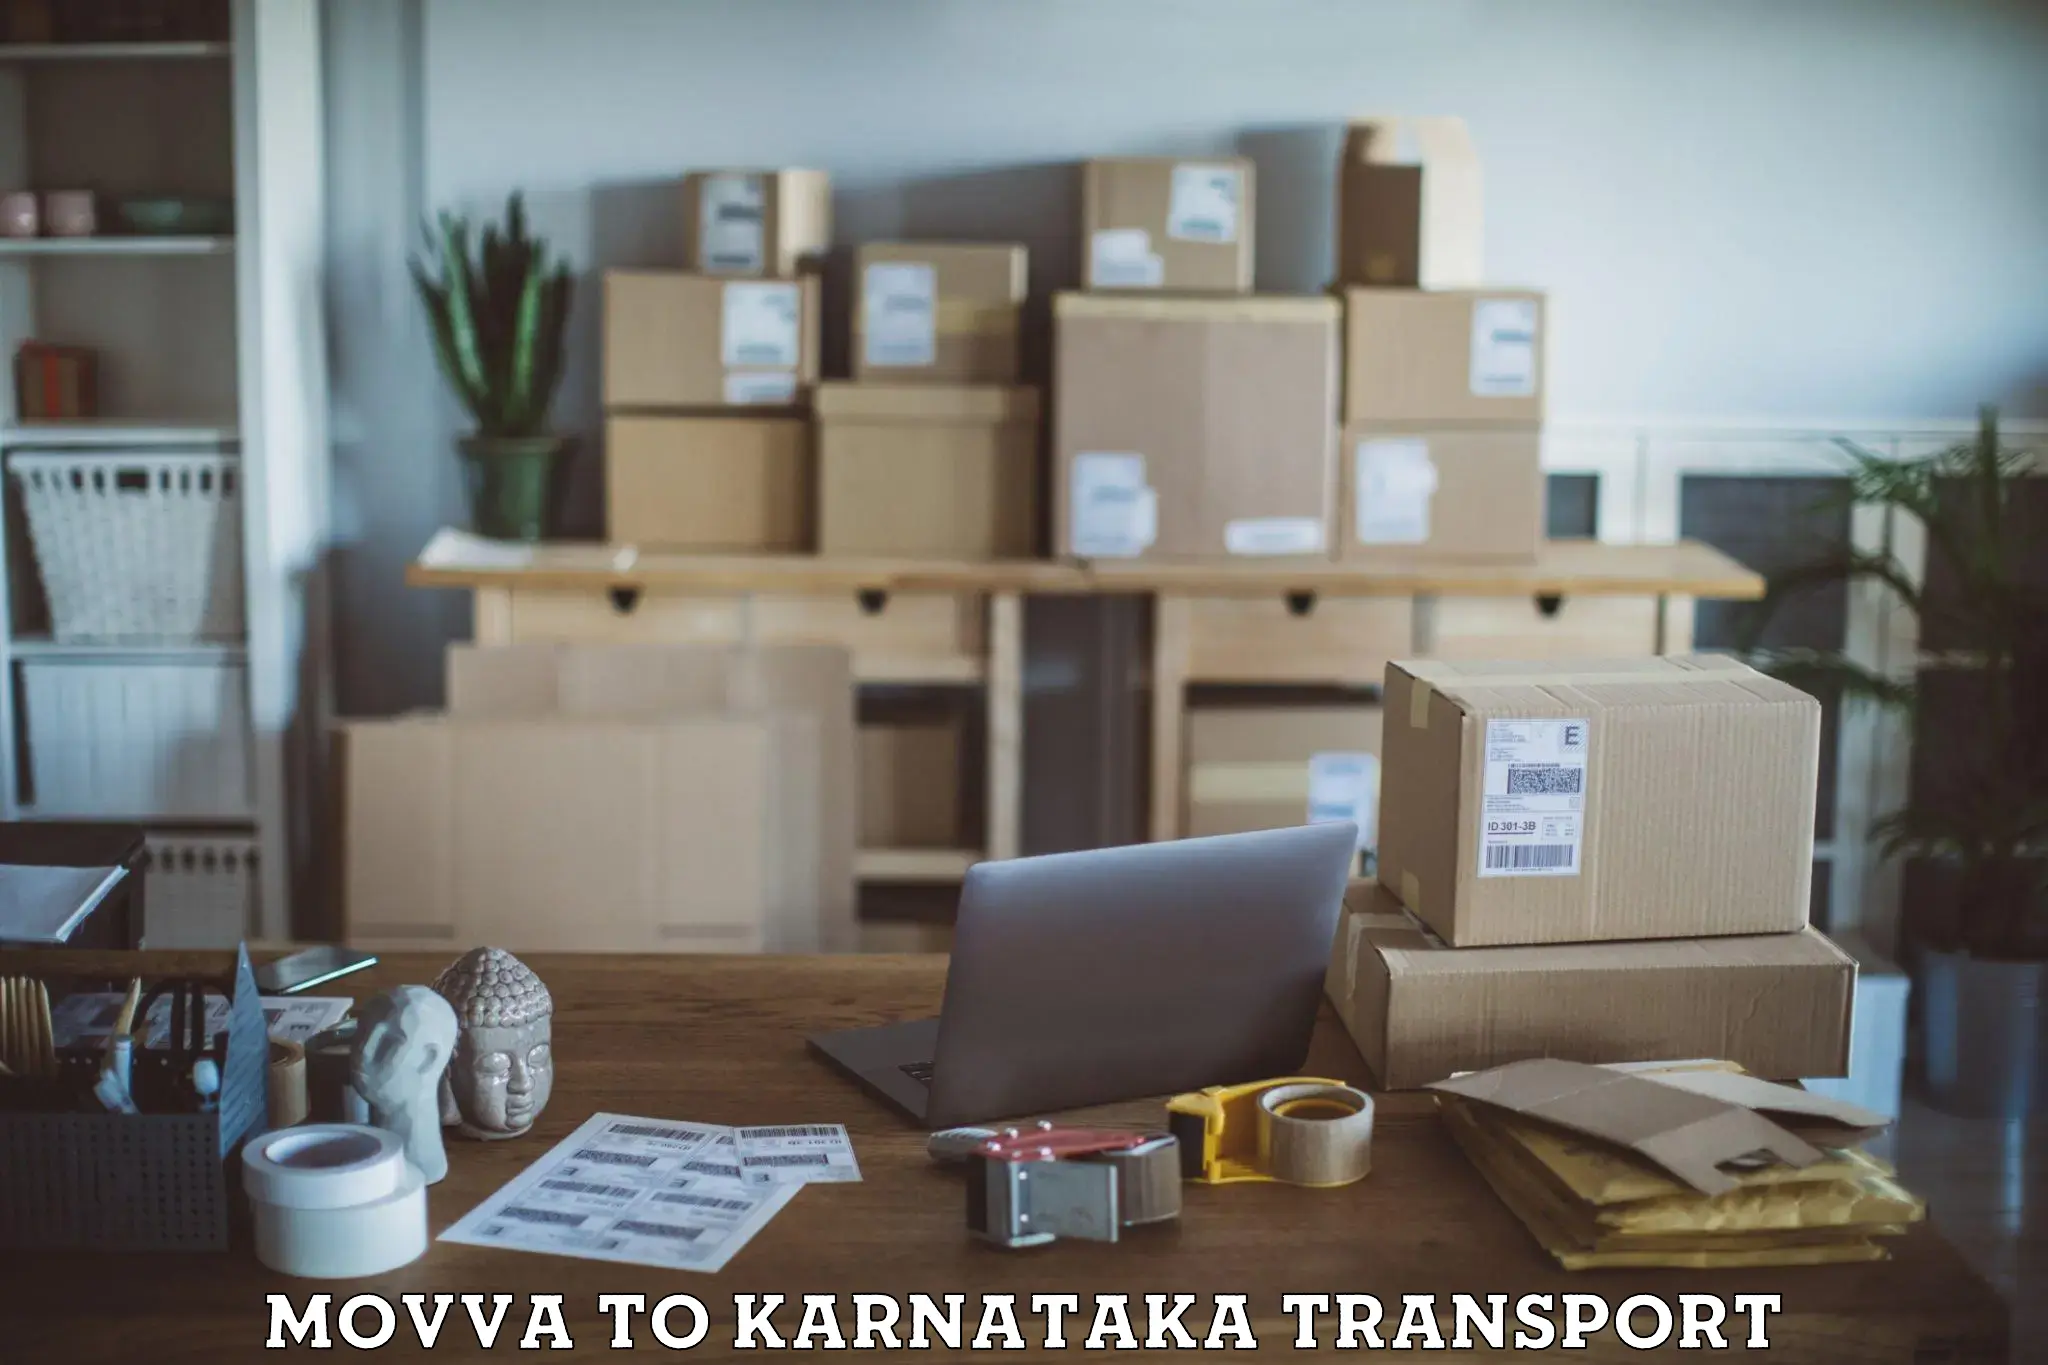 Daily transport service Movva to Ramanathapura